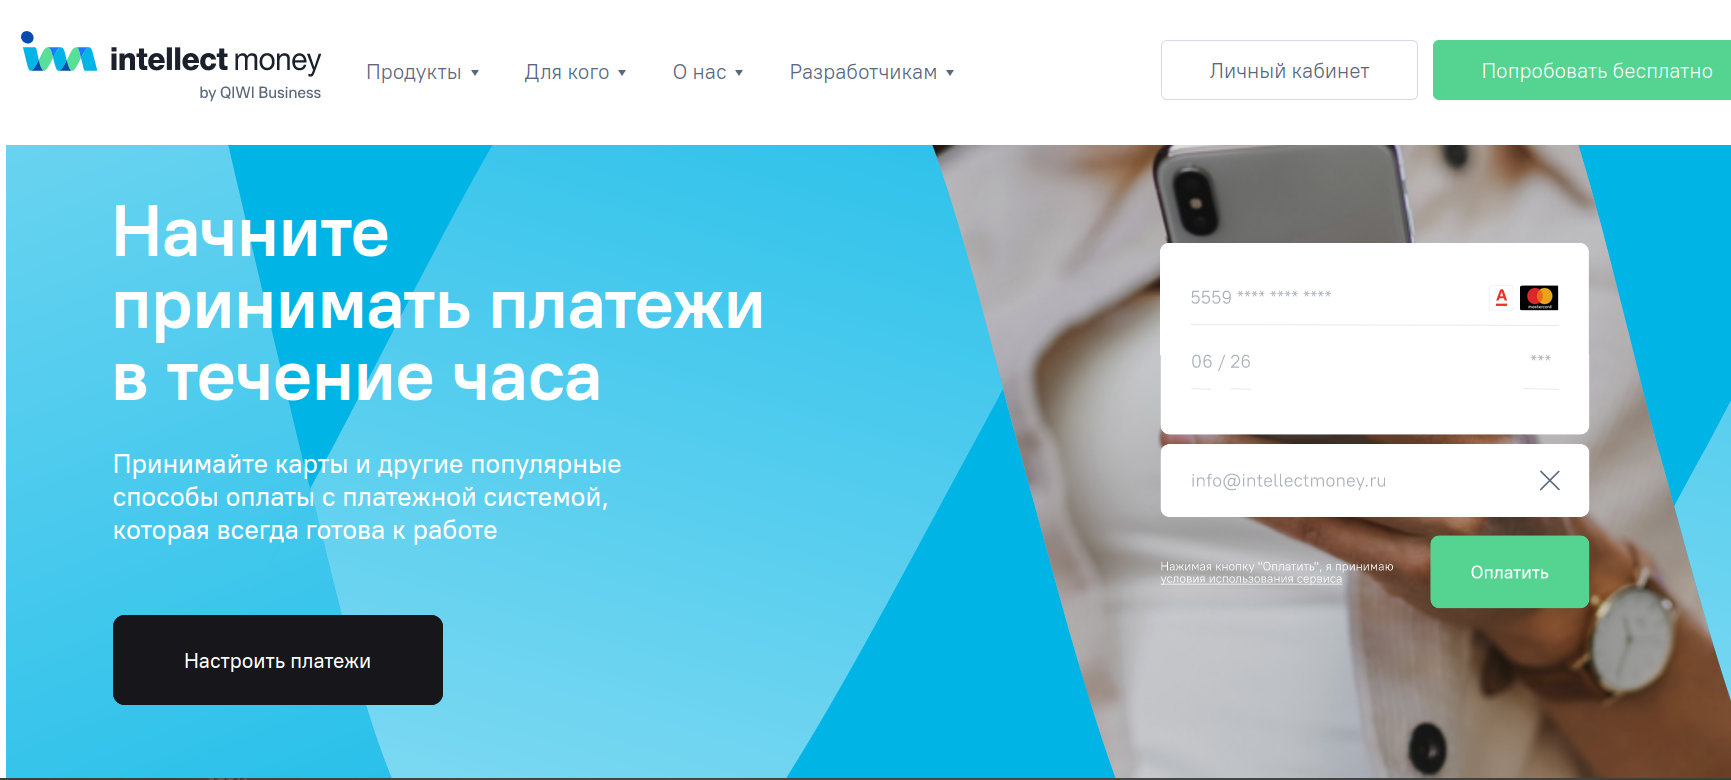 Обзор платежного сервиса intellectmoney.ru: комиссии и отзывы пользователей